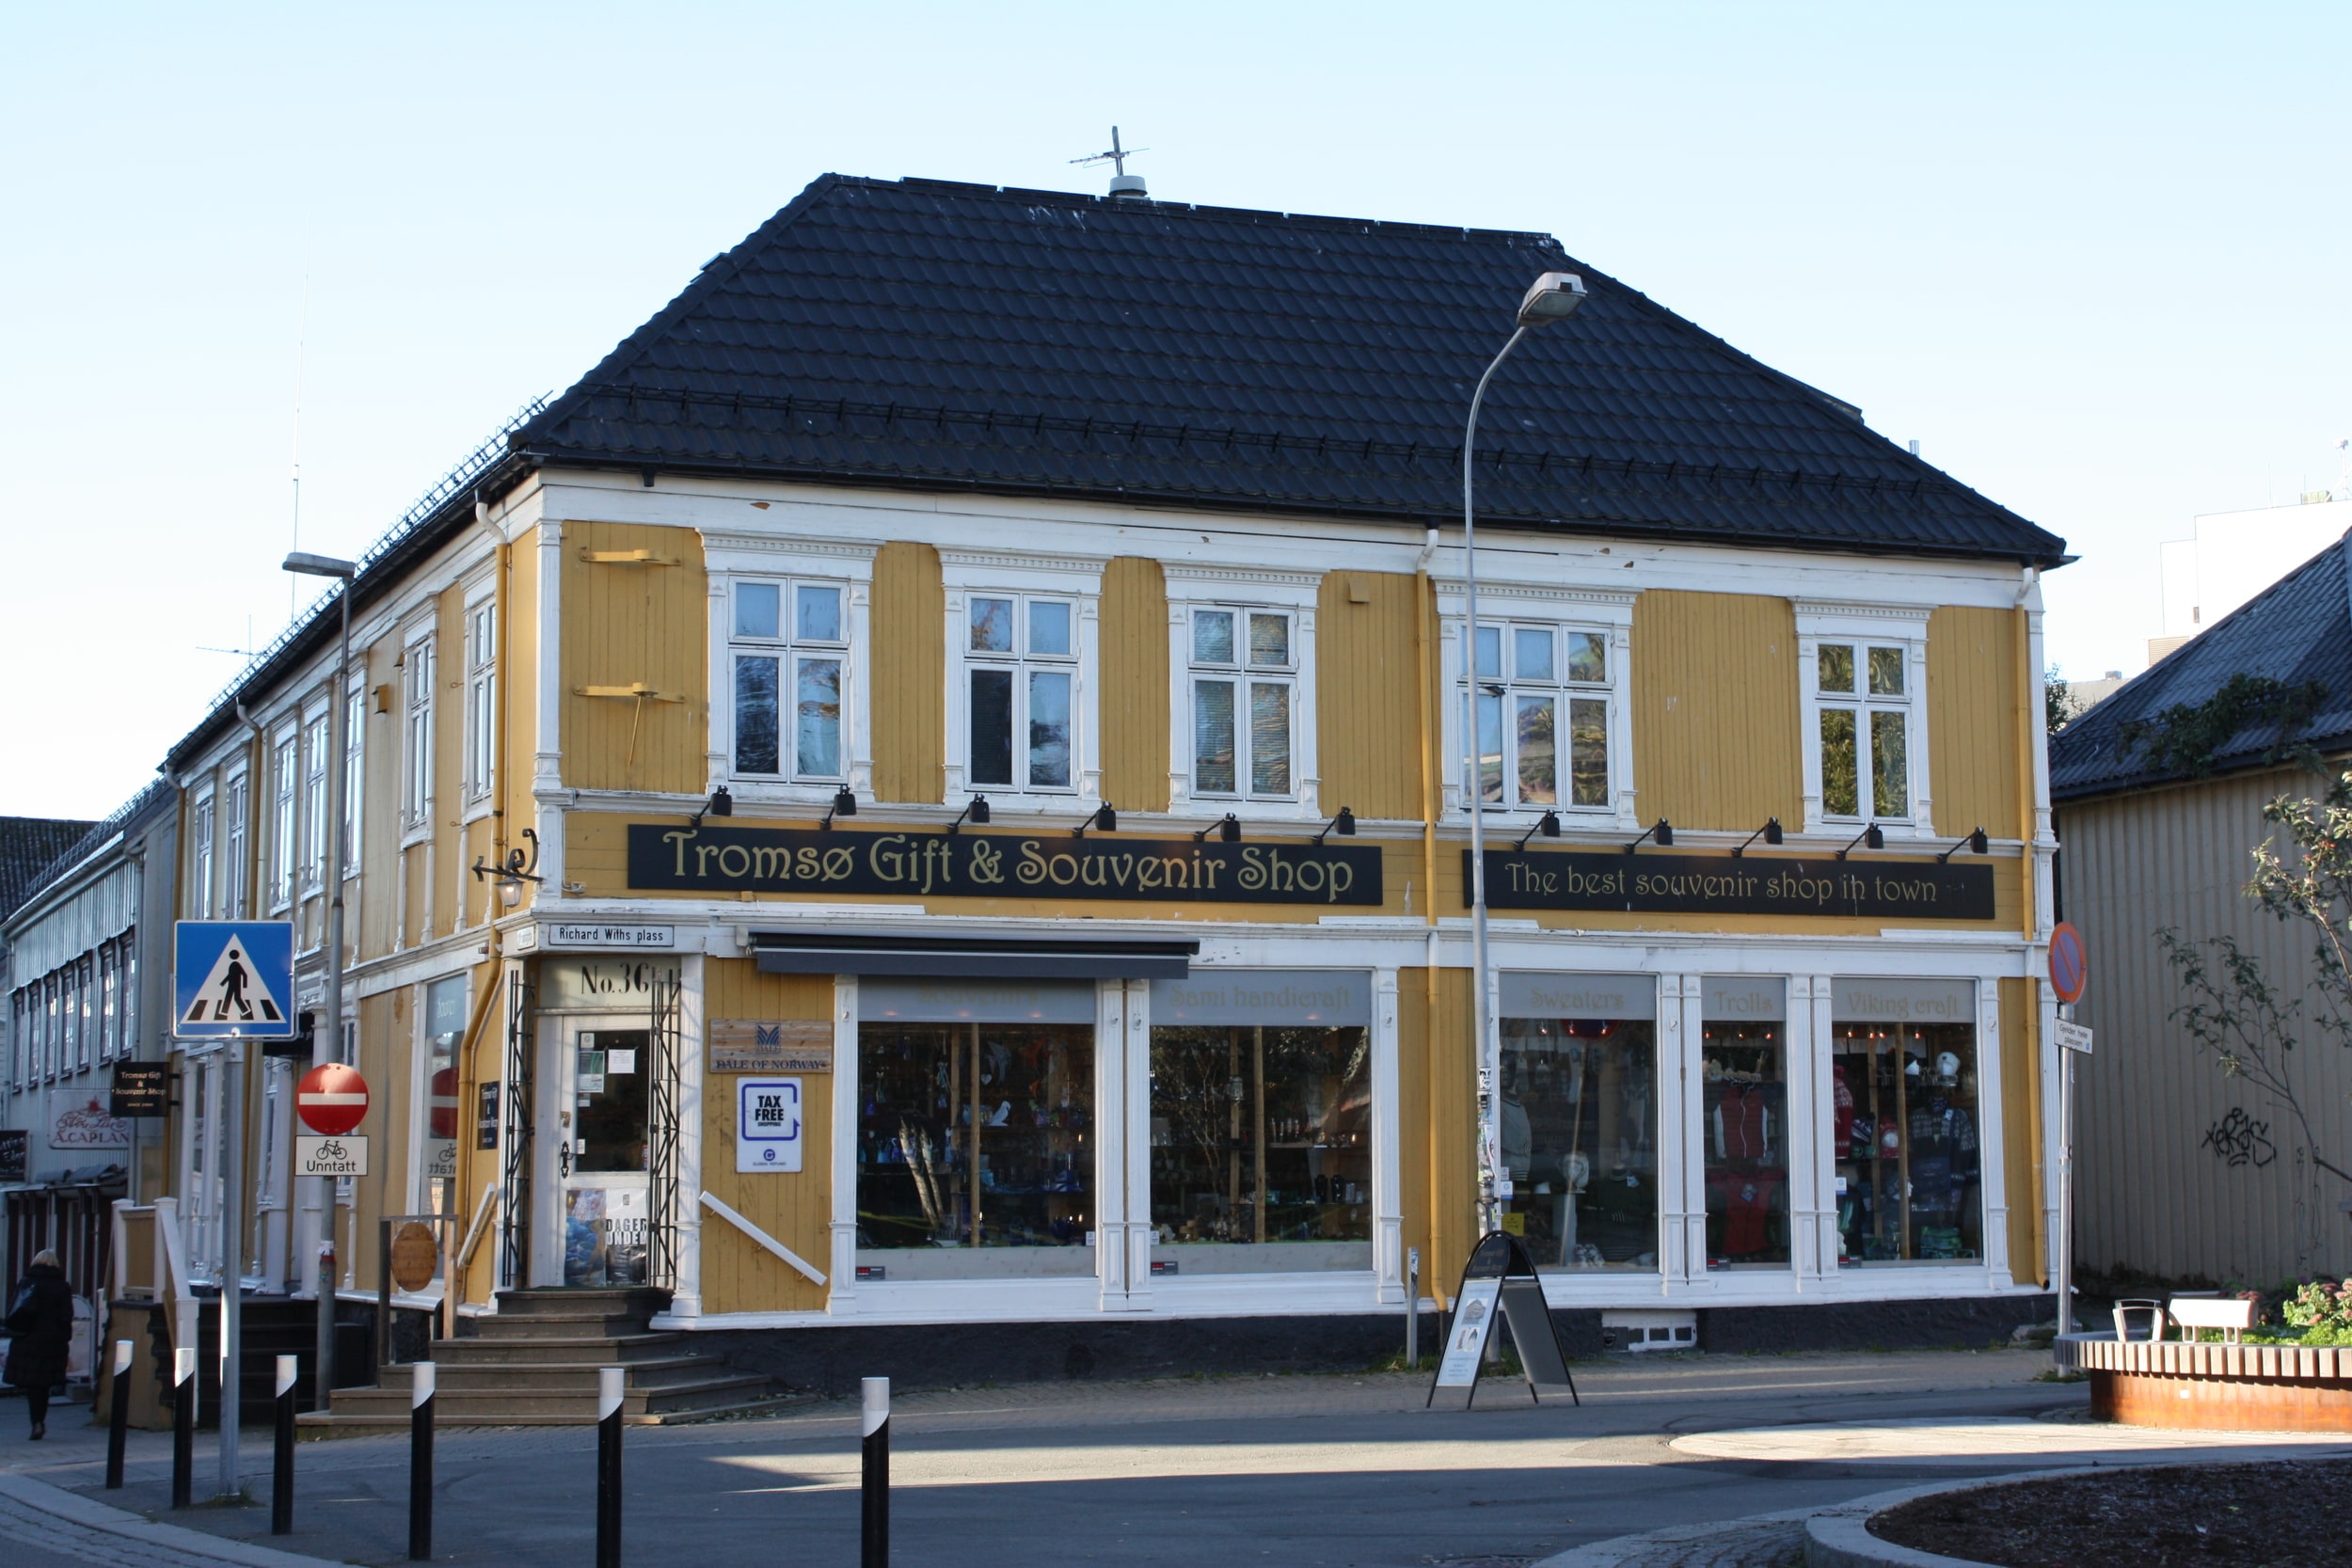 Featured image for “Tromsø Gift & Souvenir Shop”